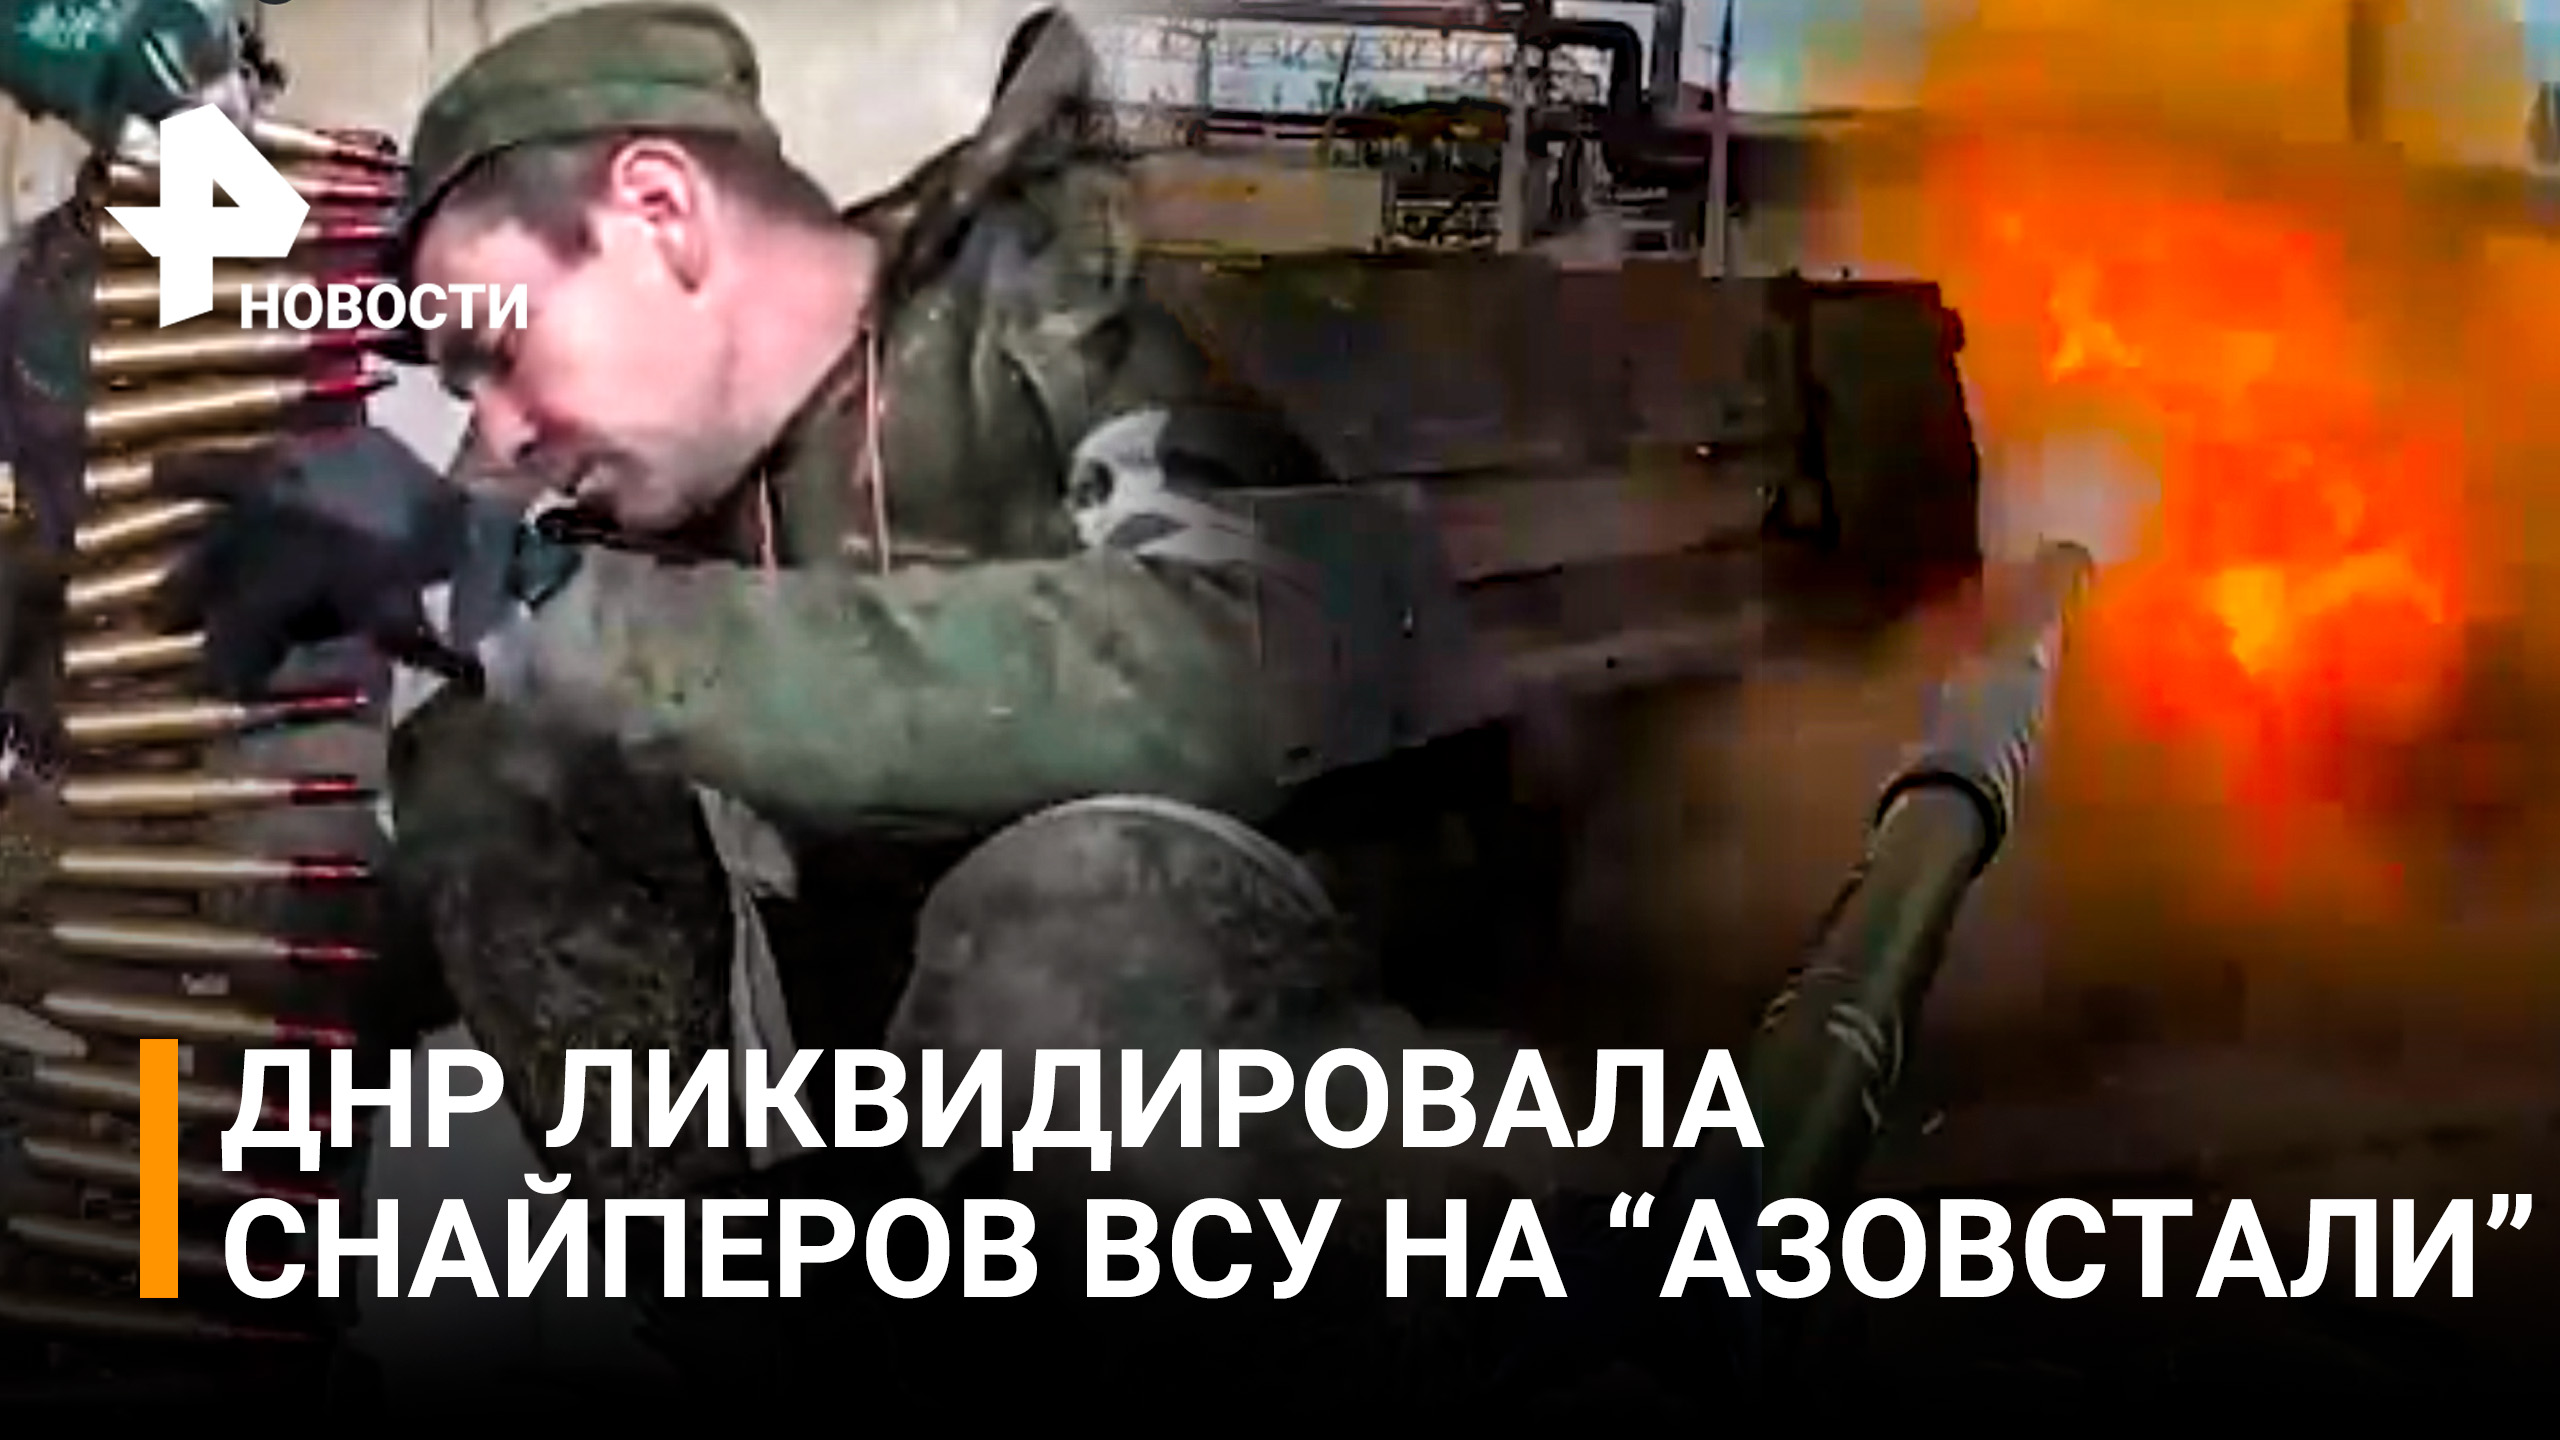 Бойцы ДНР ликвидировали двух снайперов ВСУ на "Азовстали" / РЕН Новости